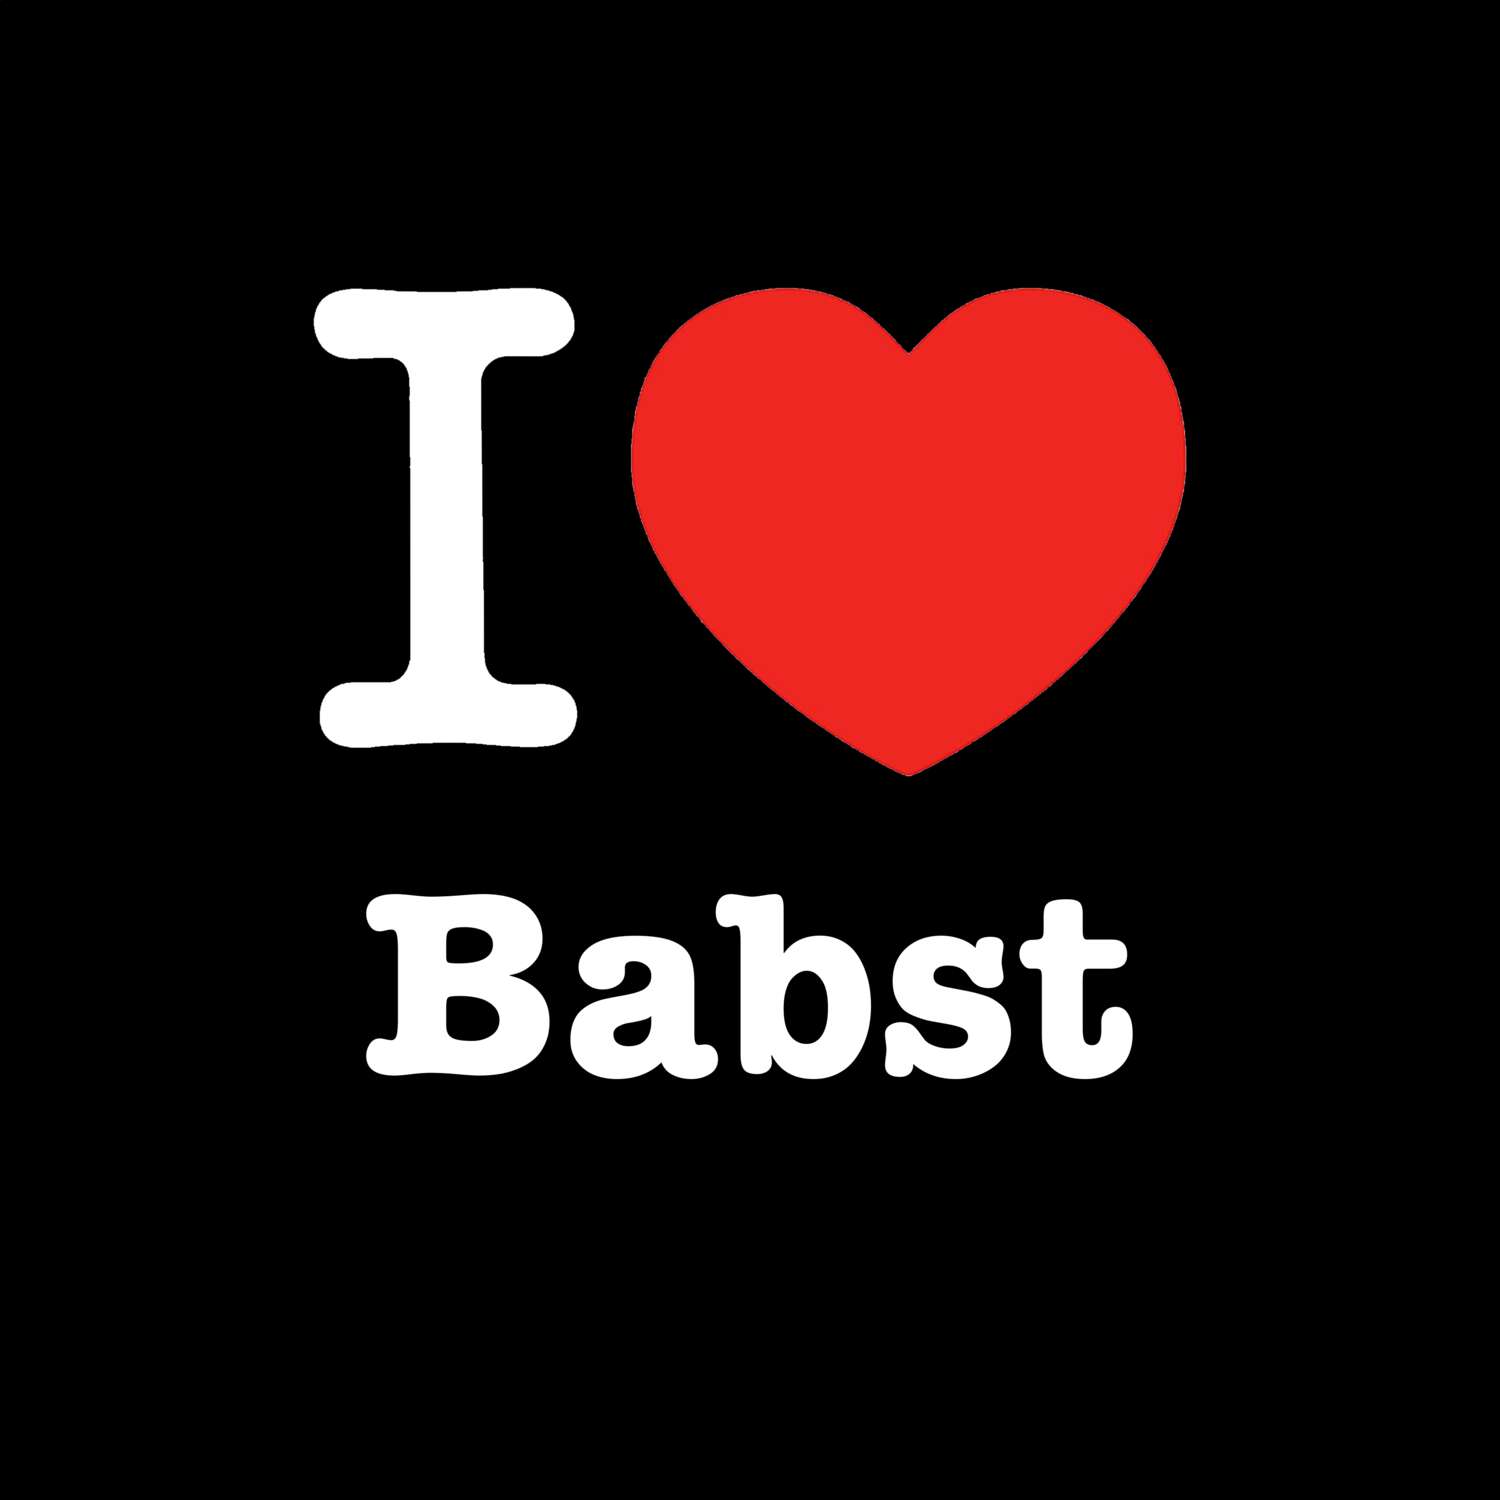 Babst T-Shirt »I love«